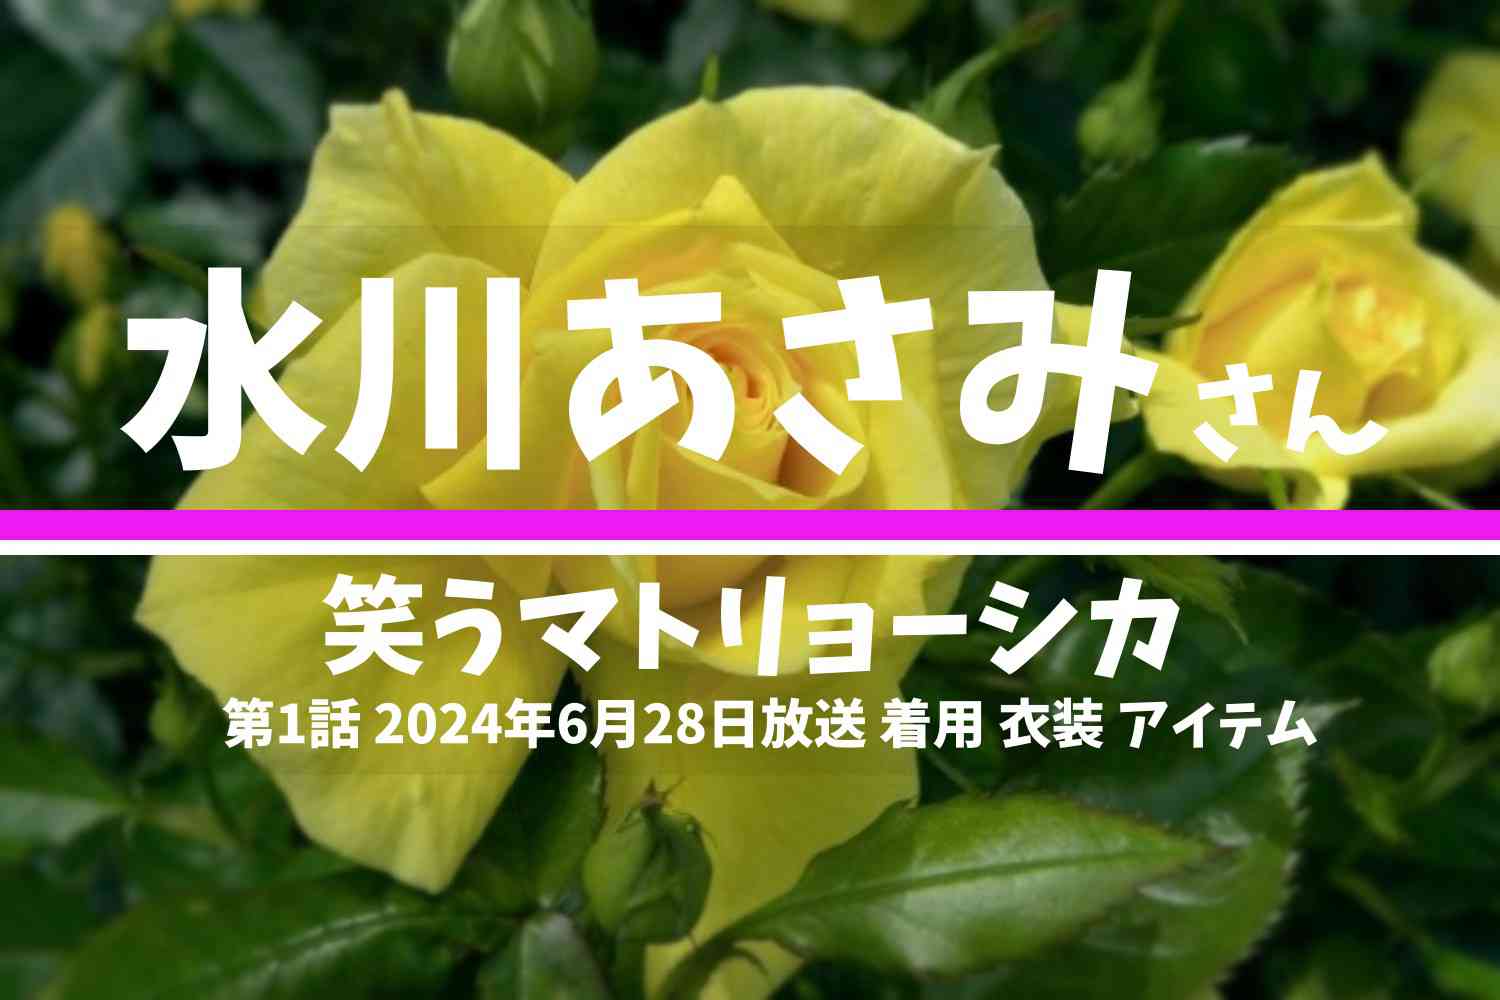 笑うマトリョーシカ 水川あさみさん テレビドラマ 衣装 2024年6月28日放送